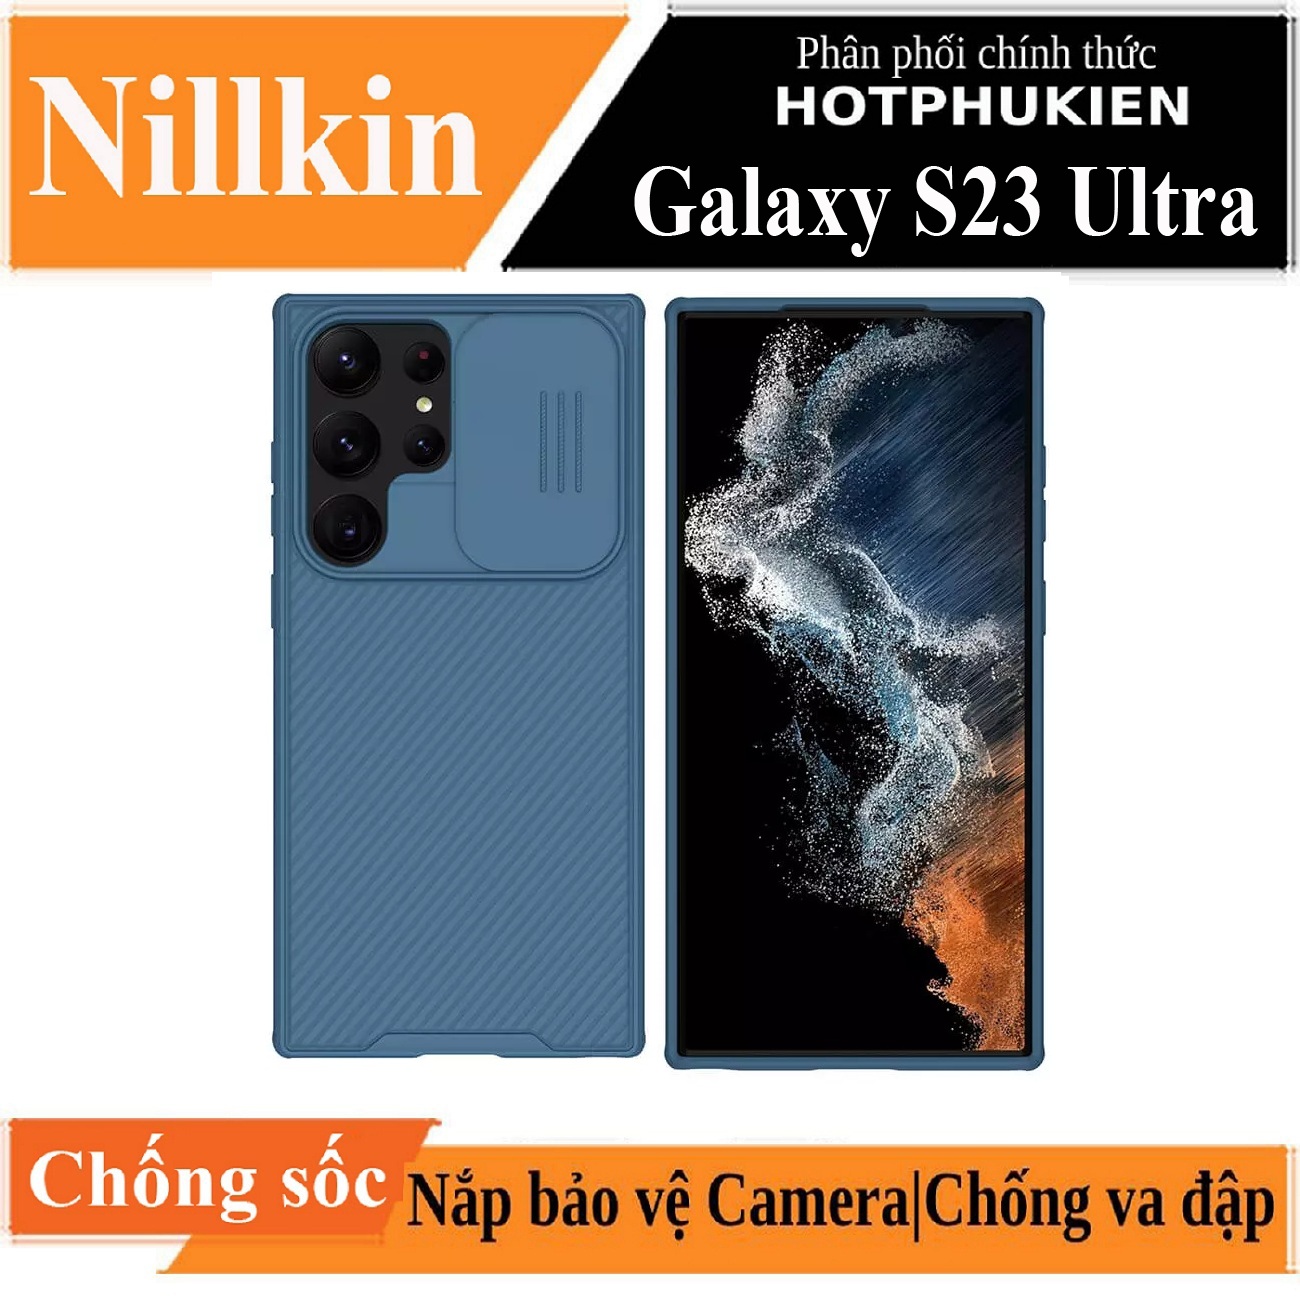 Ốp lưng chống sốc bảo vệ camera cho Samsung Galaxy S23 Ultra hiệu Nillkin Camshield Pro chống sốc cực tốt, chất liệu cao cấp, có khung & nắp đậy bảo vệ Camera - Hàng nhập khẩu